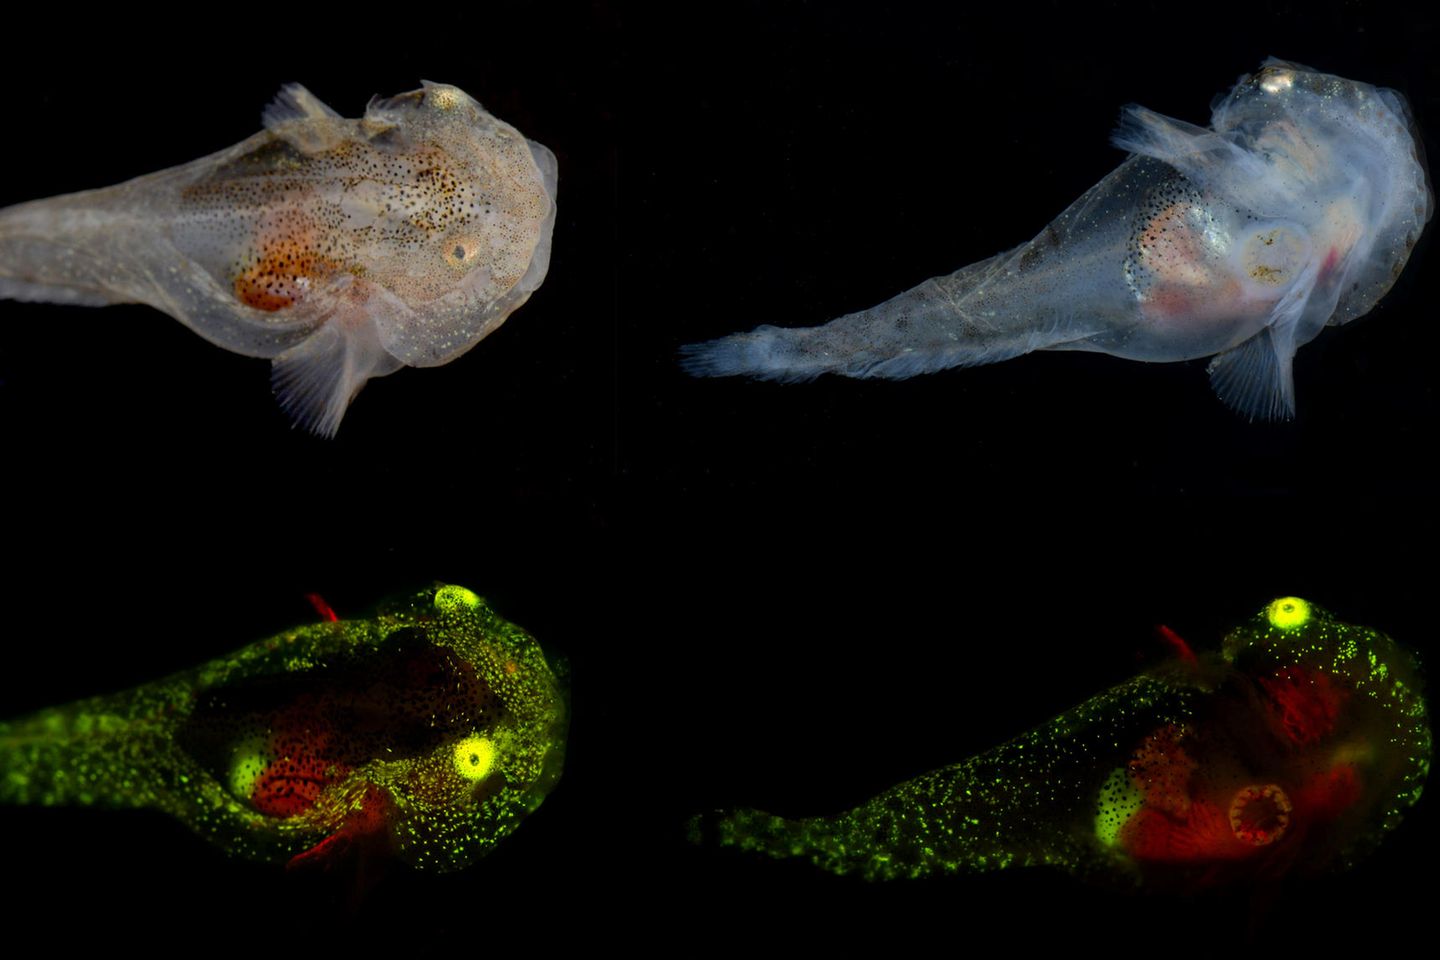 Exemplare der Fischart Liparis gibbus. Aufgenommen unter Weißlicht- (oben) und unter Fluoreszenzlichtbedingungen (unten)